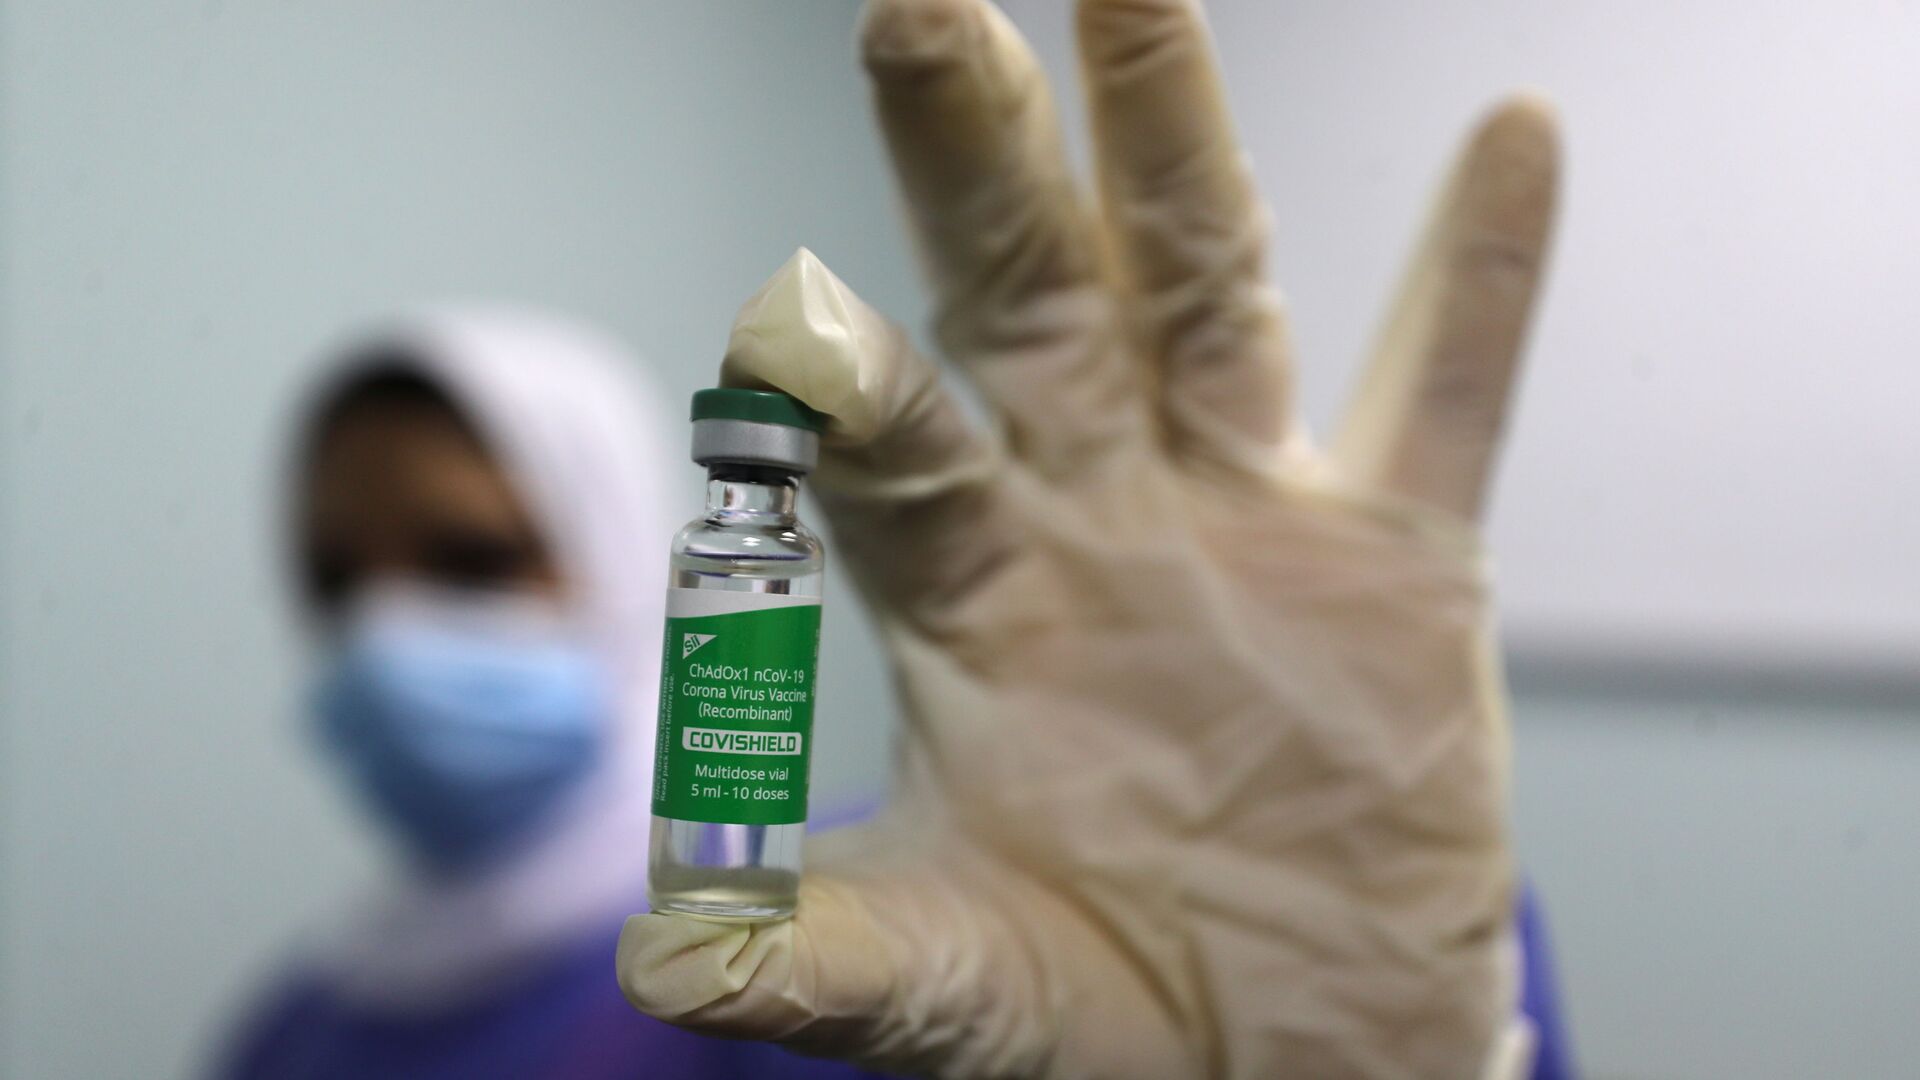 بدء تطعيم واسع النطاق في مصر ضد فيروس كورونا (كوفيد-19)، القاهرة، 4 مارس 2021 - سبوتنيك عربي, 1920, 26.05.2021